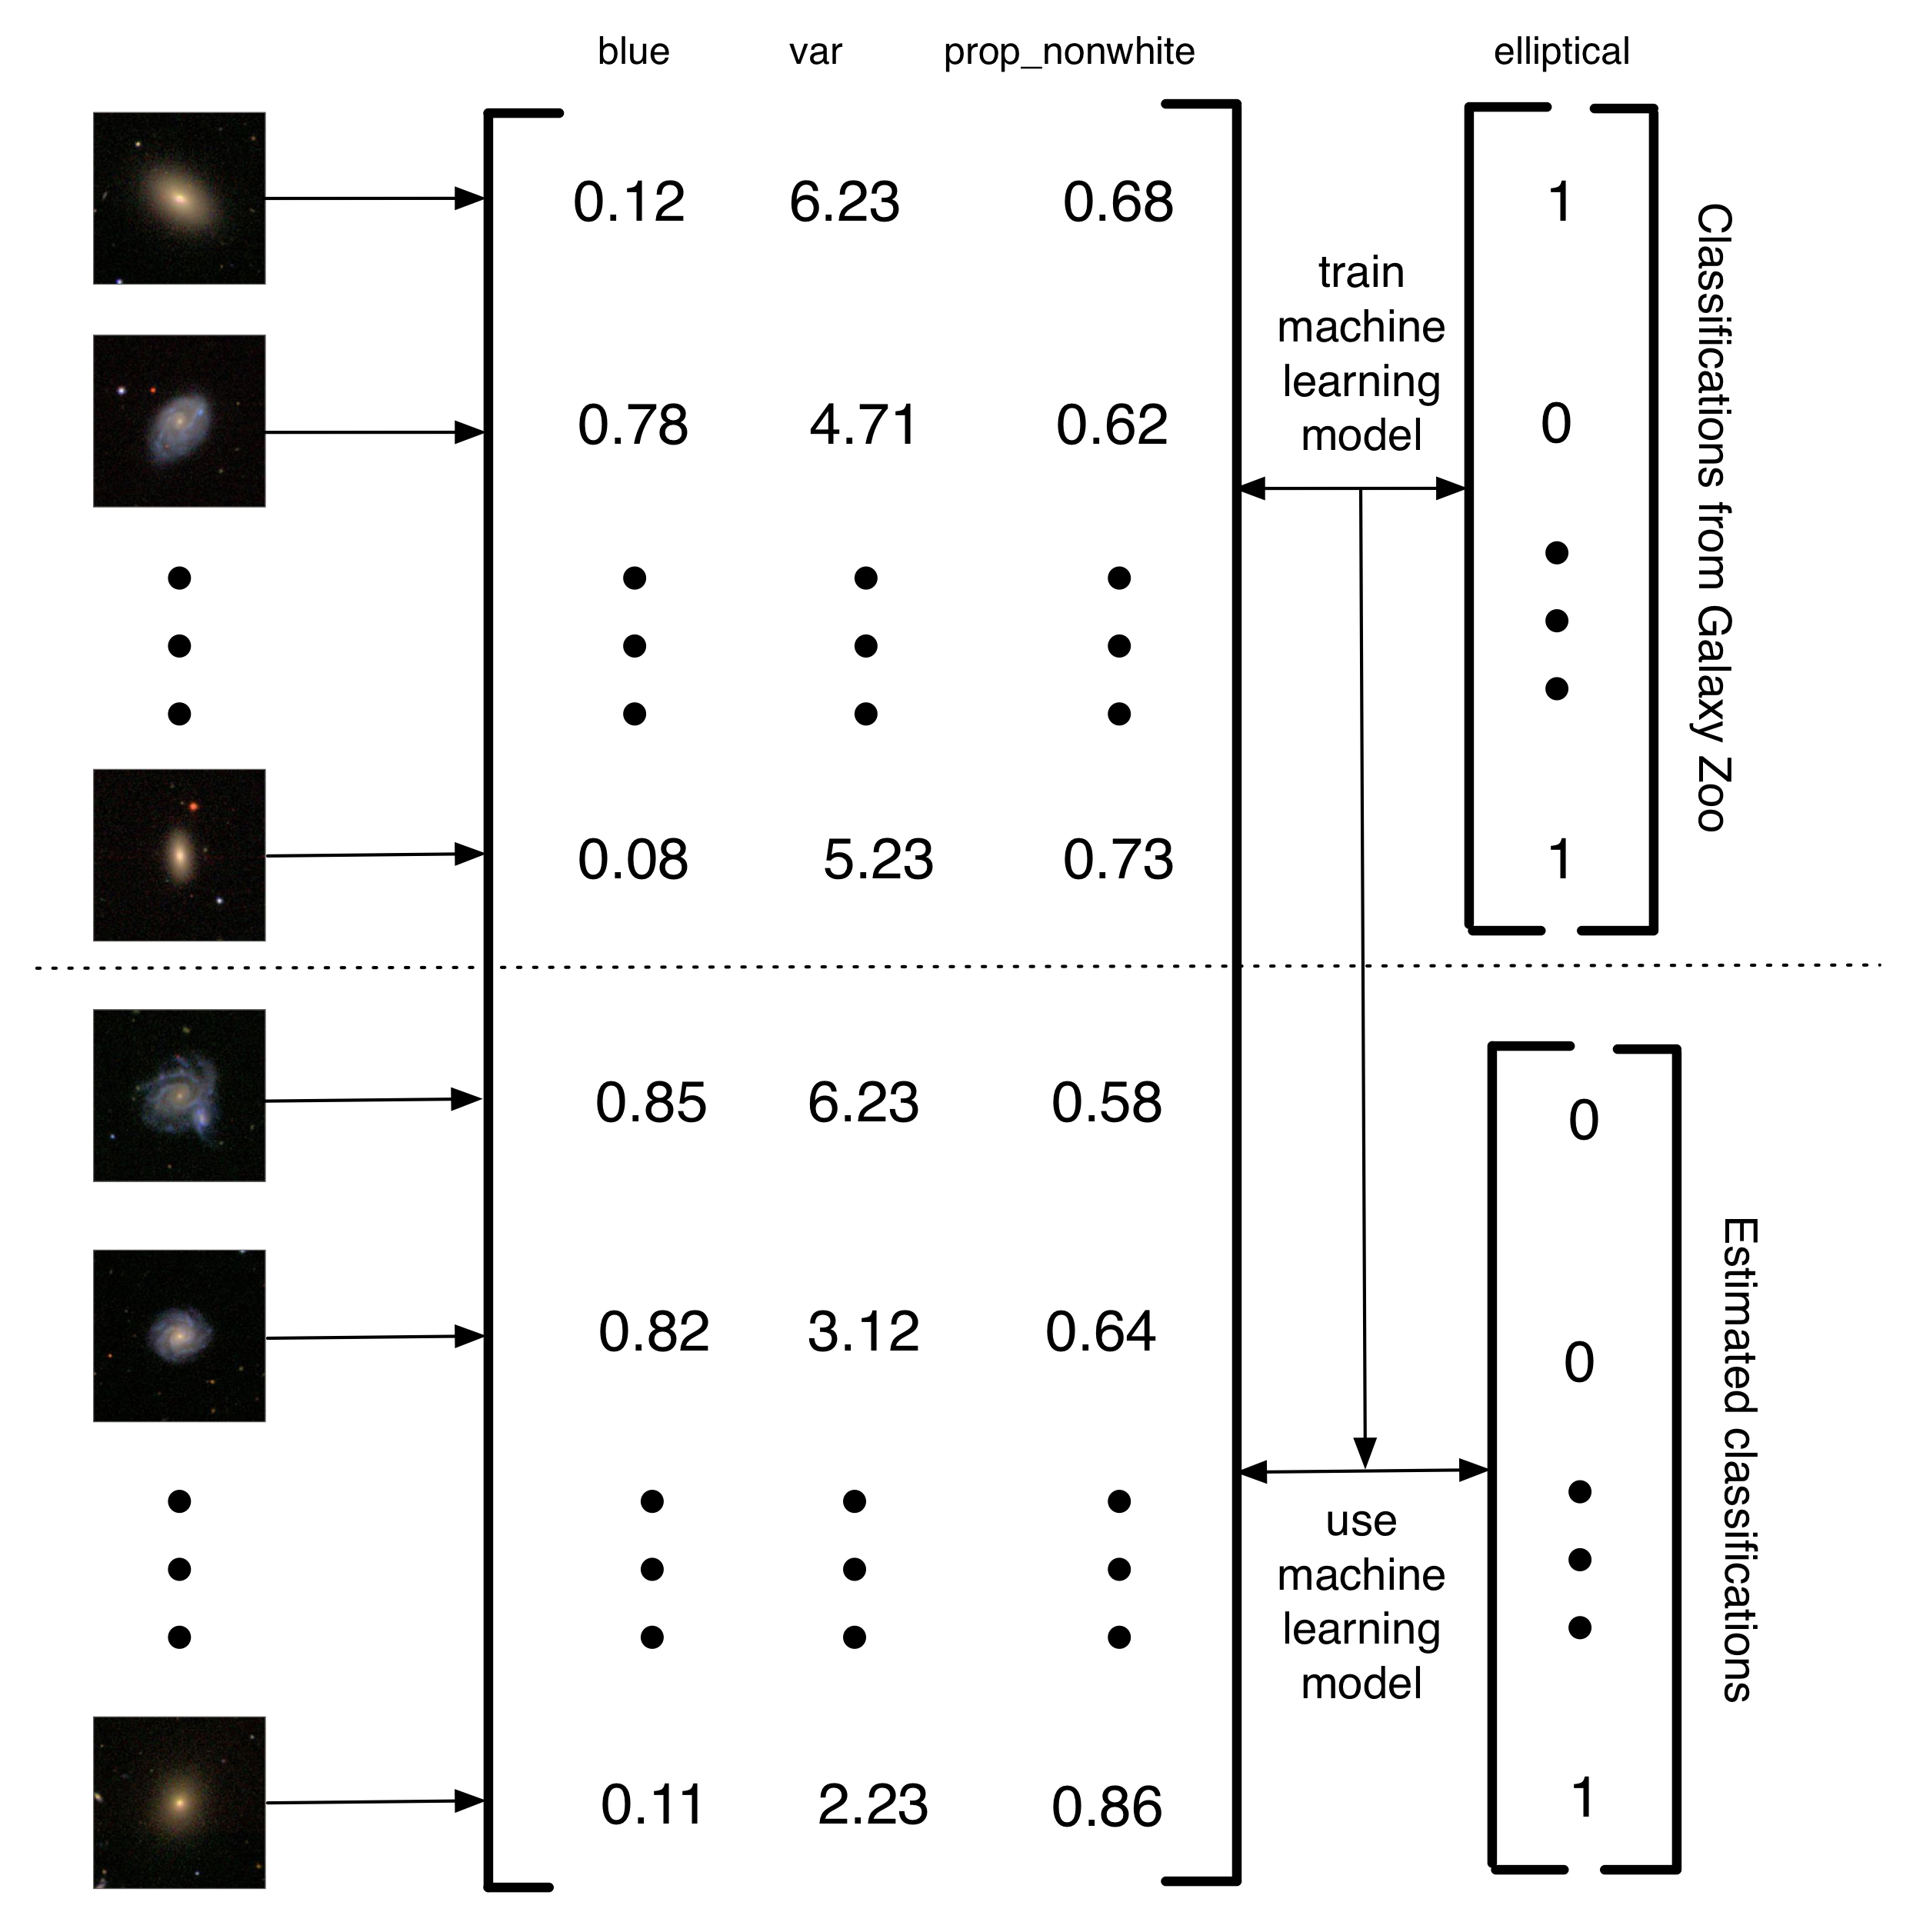 आकृती 5.4: बॅनर्जी आणि कसे अल सरलीकृत वर्णन. (2010) आकाशगंगा वर्गीकरण करू मशीन लर्निंग मॉडेल सराव वापरले दीर्घिका प्राणीसंग्रहालय वर्गवार्या. आकाशगंगा आहेतच प्रतिमा वैशिष्ट्ये एक मॅट्रिक्स मध्ये रूपांतरित होते. या सोप्या उदाहरण तीन वैशिष्ट्ये (प्रतिमा मध्ये निळा रक्कम, पिक्सेल ब्राइटनेस मध्ये फरक, व विना-पांढरा पिक्सेल प्रमाण) आहेत. मग, प्रतिमा एक उपसंच आहे, दीर्घिका प्राणीसंग्रहालय लेबले मशीन लर्निंग मॉडेल सराव वापरले आहेत. शेवटी, मशीन लर्निंग उर्वरित आकाशगंगा आहेतच साठी वर्गवार्या अंदाज करण्यासाठी वापरली जाते. मी प्रकल्प या प्रकारची कॉल दुसर्या पिढी मानवी संगणकीय प्रकल्प मानव येत समस्येचे निराकरण ऐवजी, कारण ते मानव समस्येचे निराकरण करण्यासाठी संगणक सराव वापरले जाऊ शकते की एक डेटासेटचे तयार आहे. या संगणक सहाय्य दृष्टिकोन फायदा आपण मानवी प्रयत्न फक्त एक मर्यादित रक्कम वापरून डेटा मूलत असीम प्रमाणात हाताळण्यासाठी सक्षम आहे.